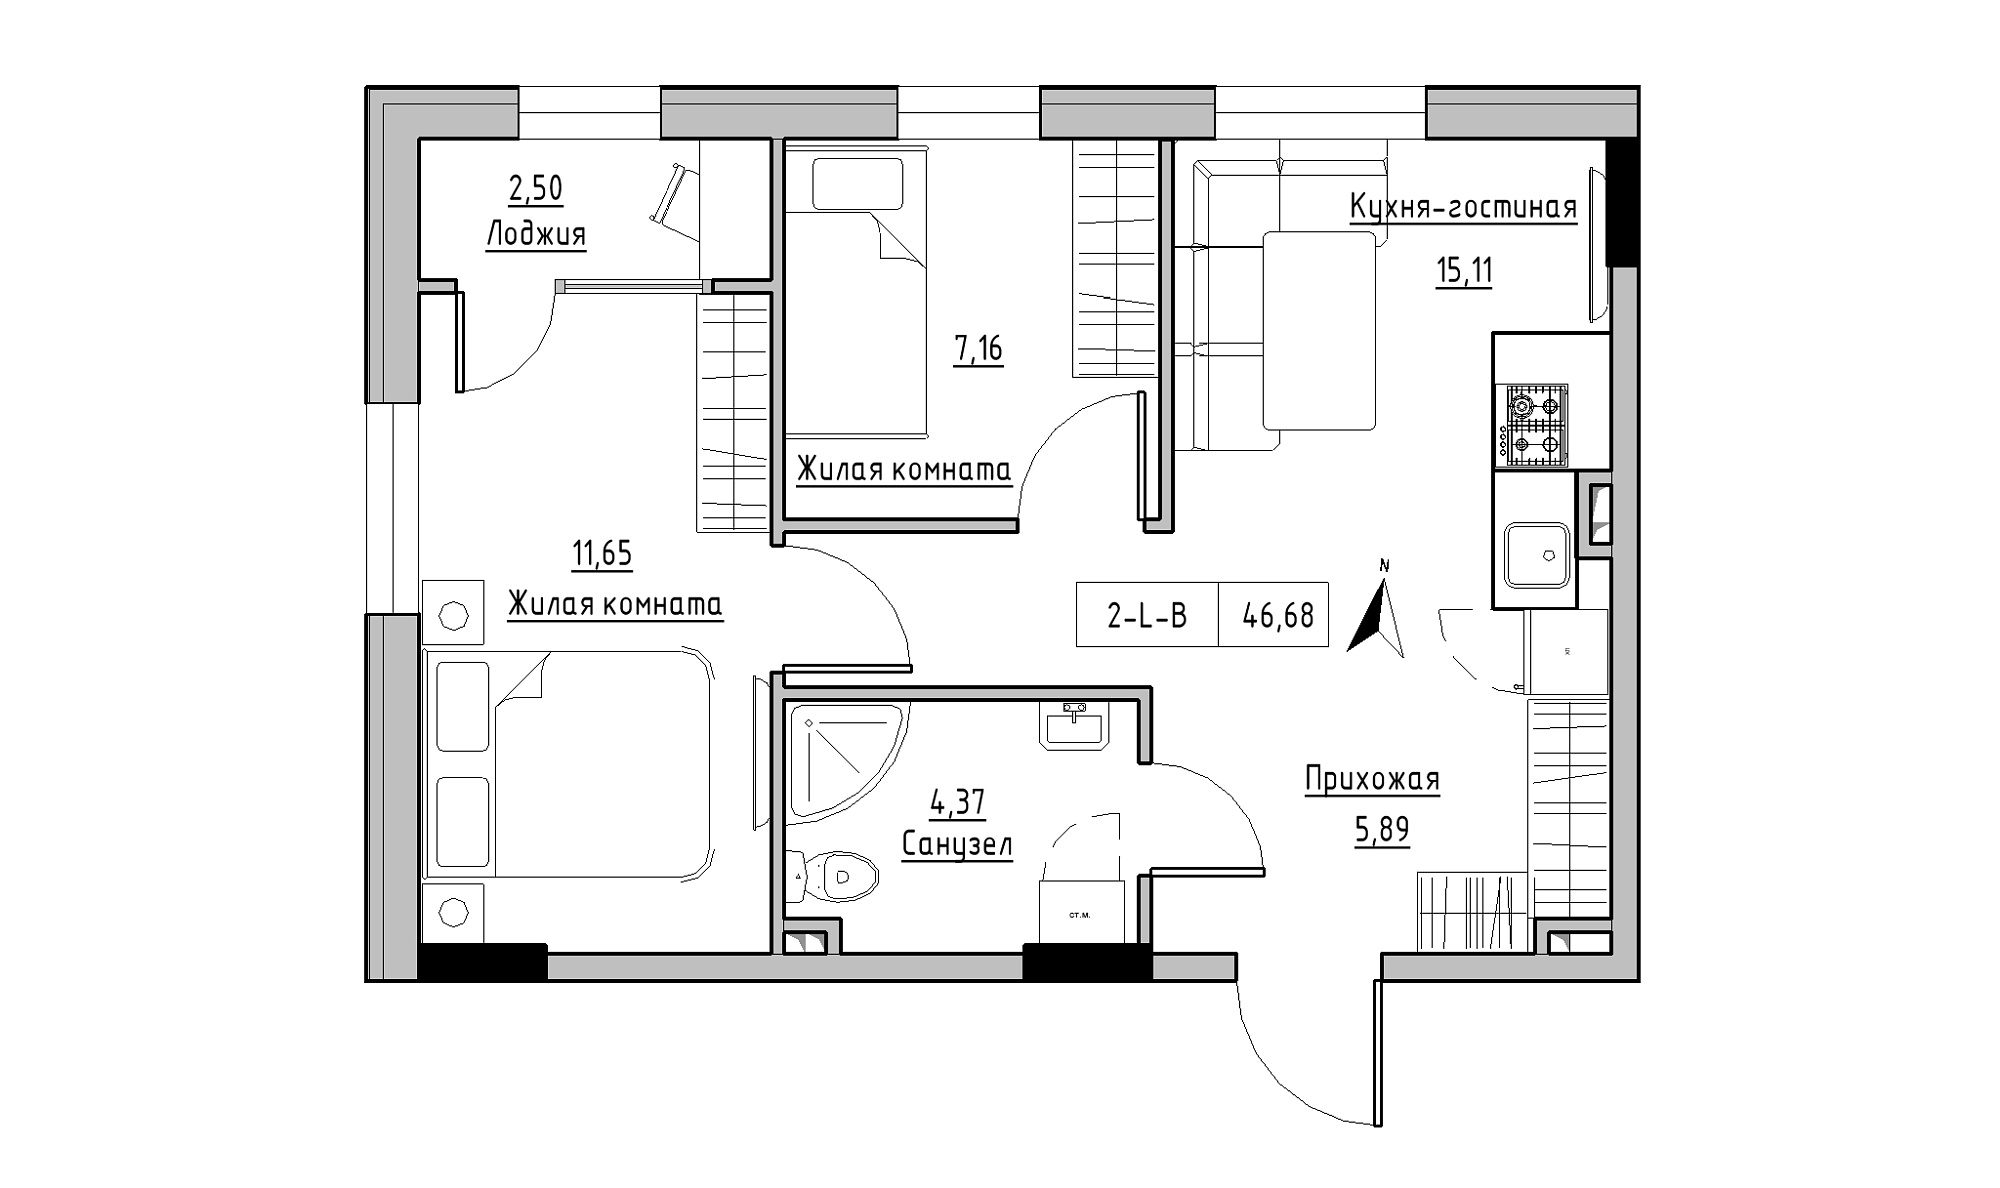 Планировка 2-к квартира площей 46.68м2, KS-025-01/0006.